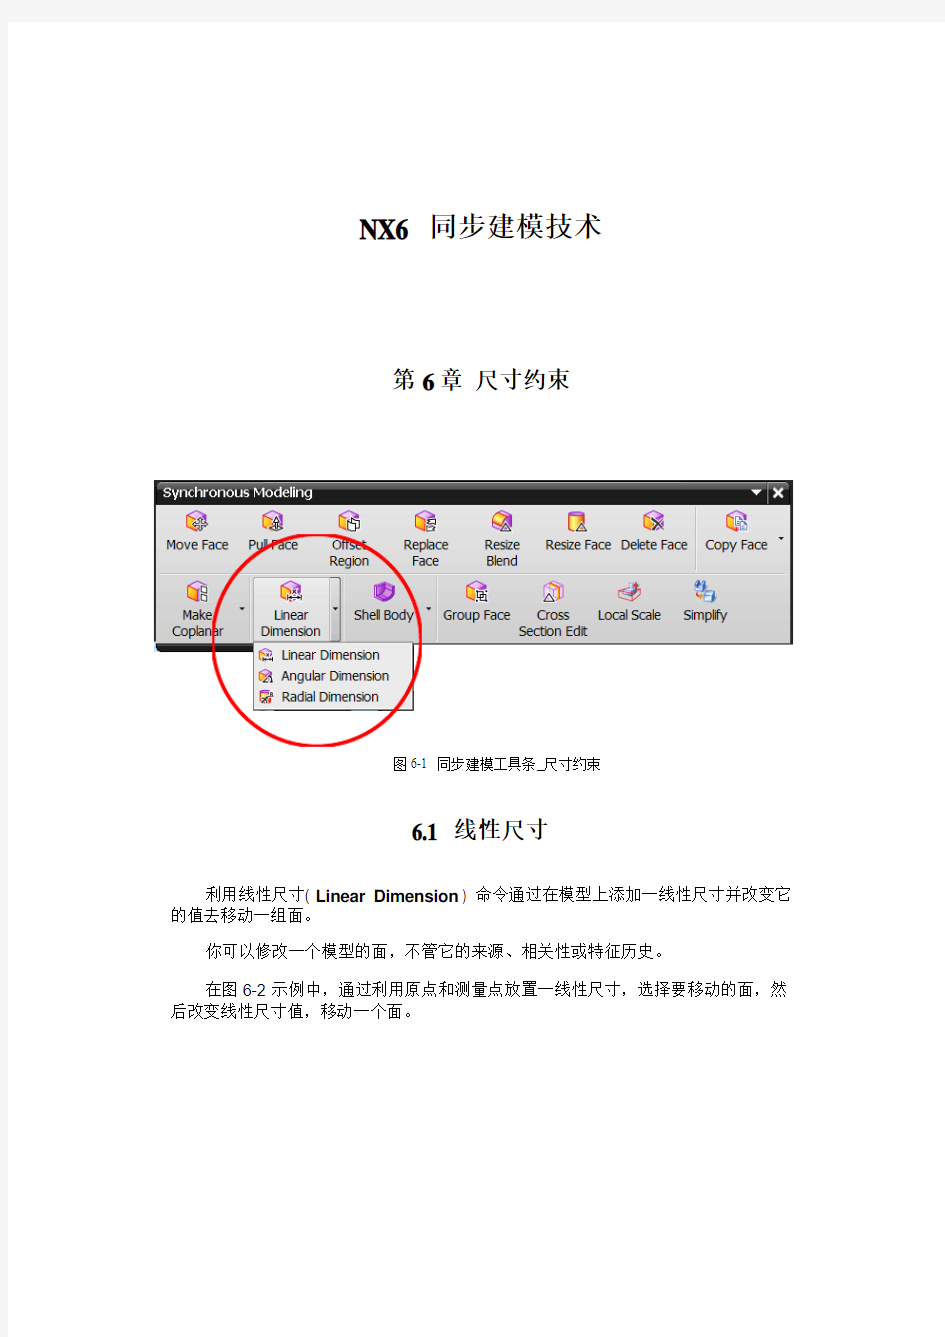 NX6 同步建模技术培训教程_6